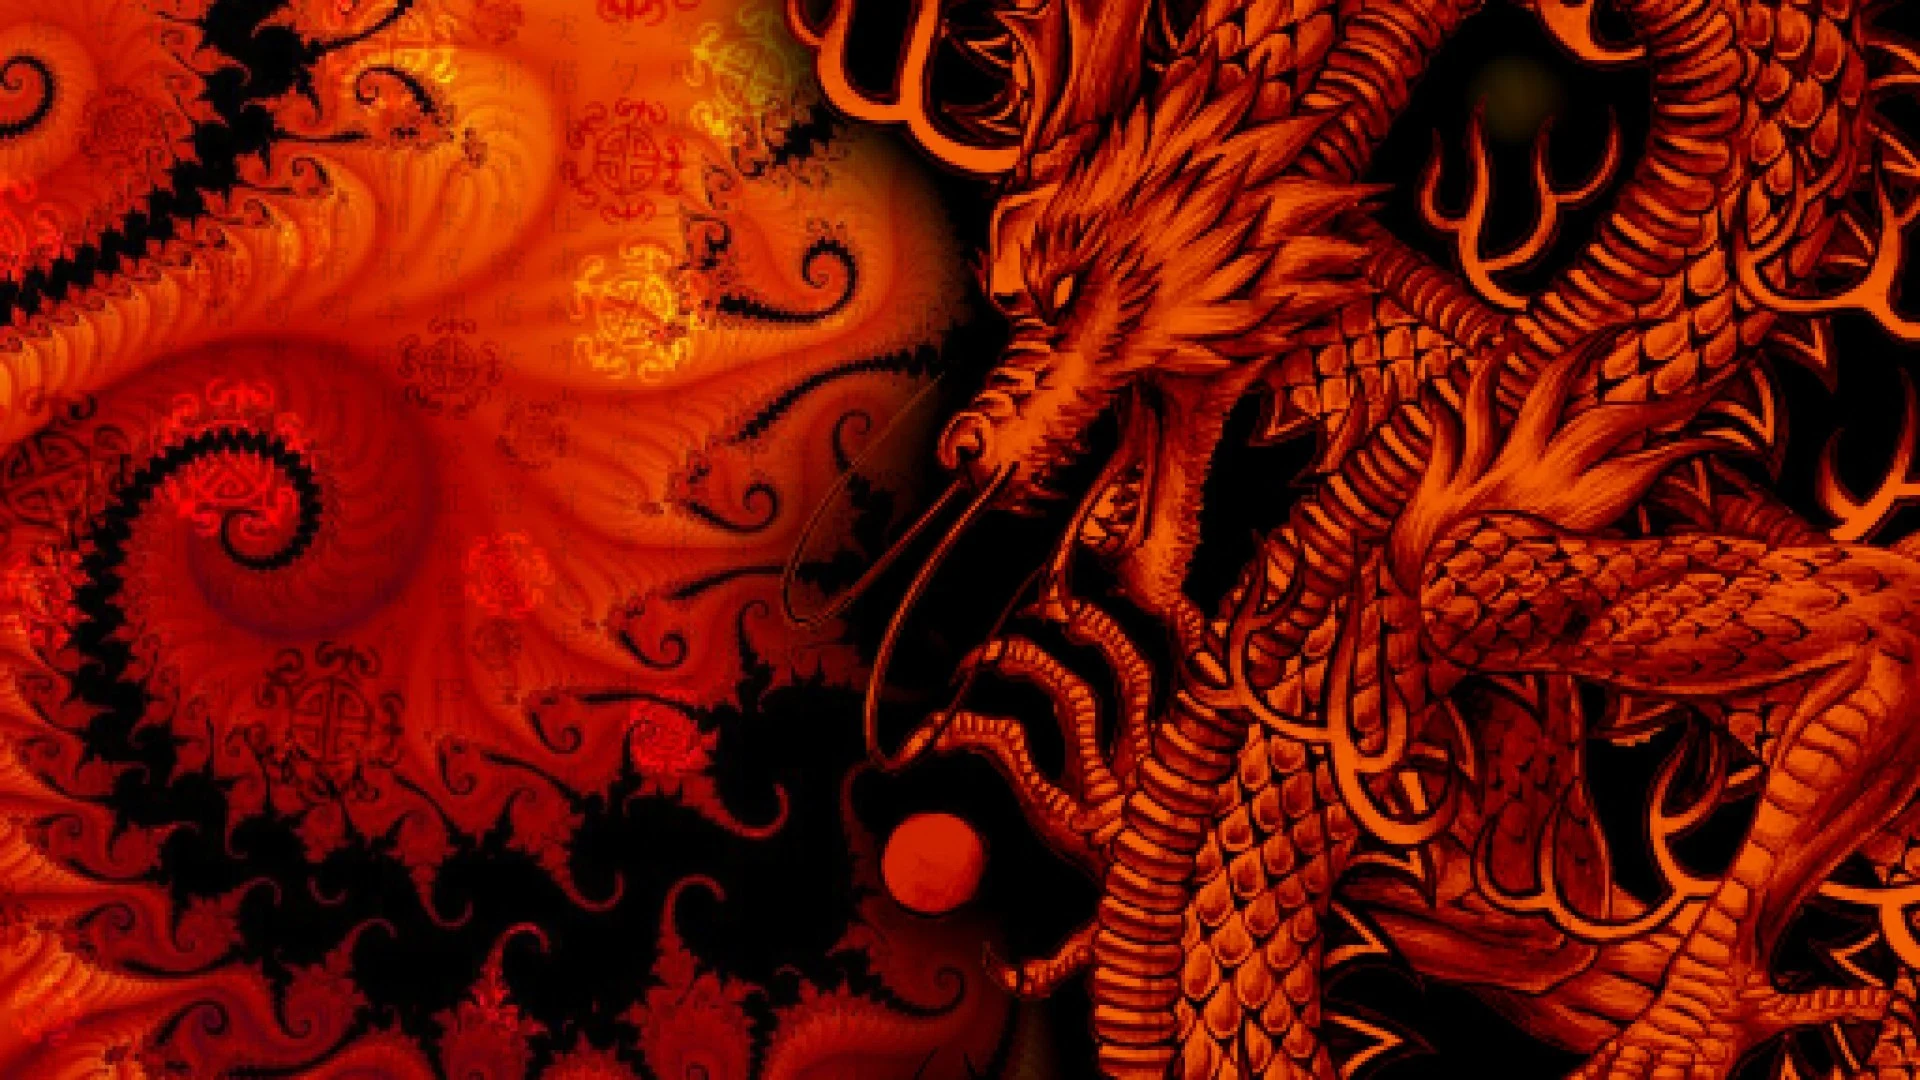 0 Dragon HD Wallpapers Dragon HD Wallpapers 1080p